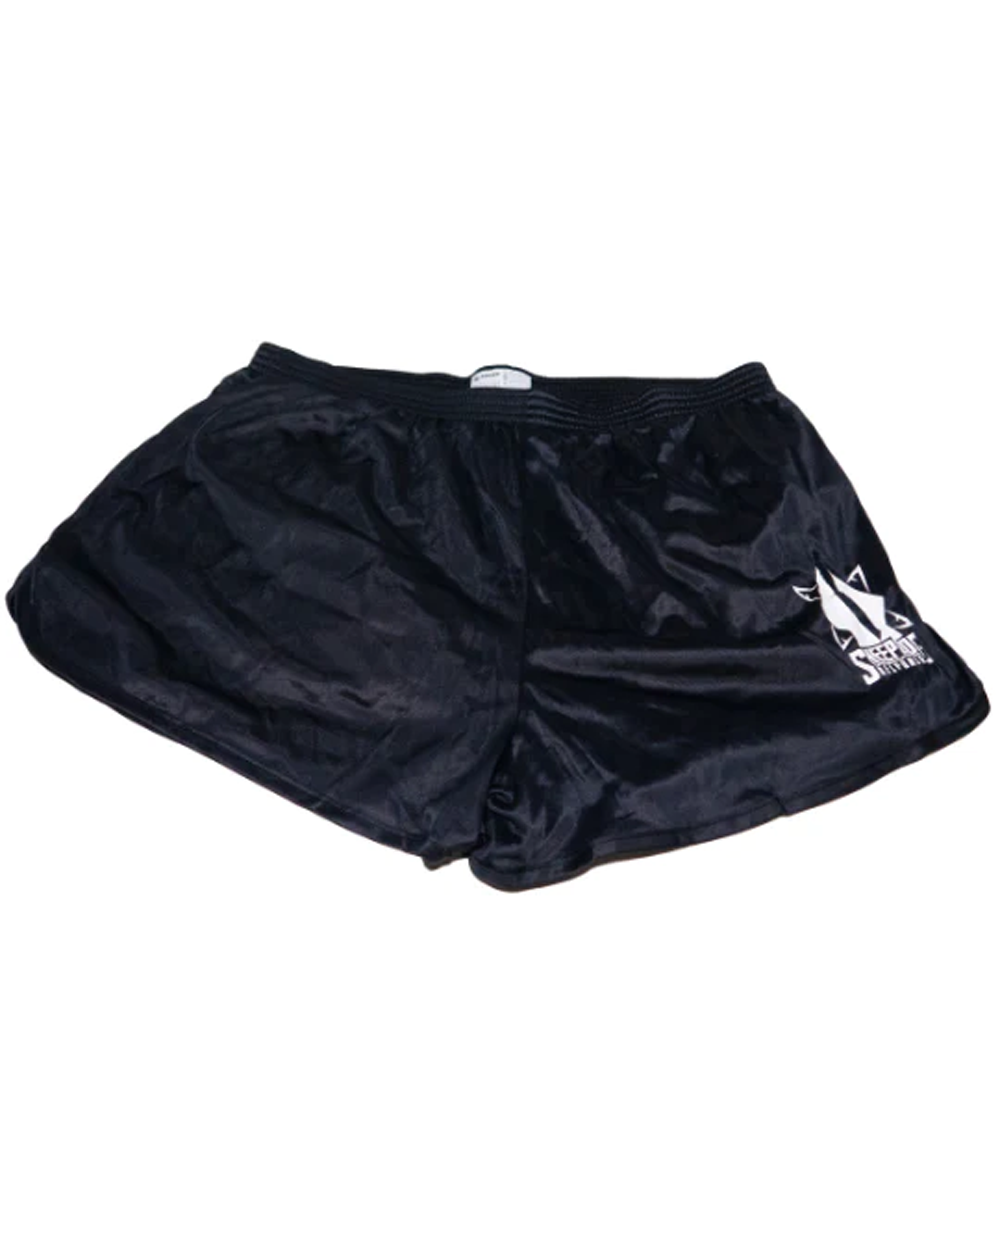 SDR Ranger Panties Shorts